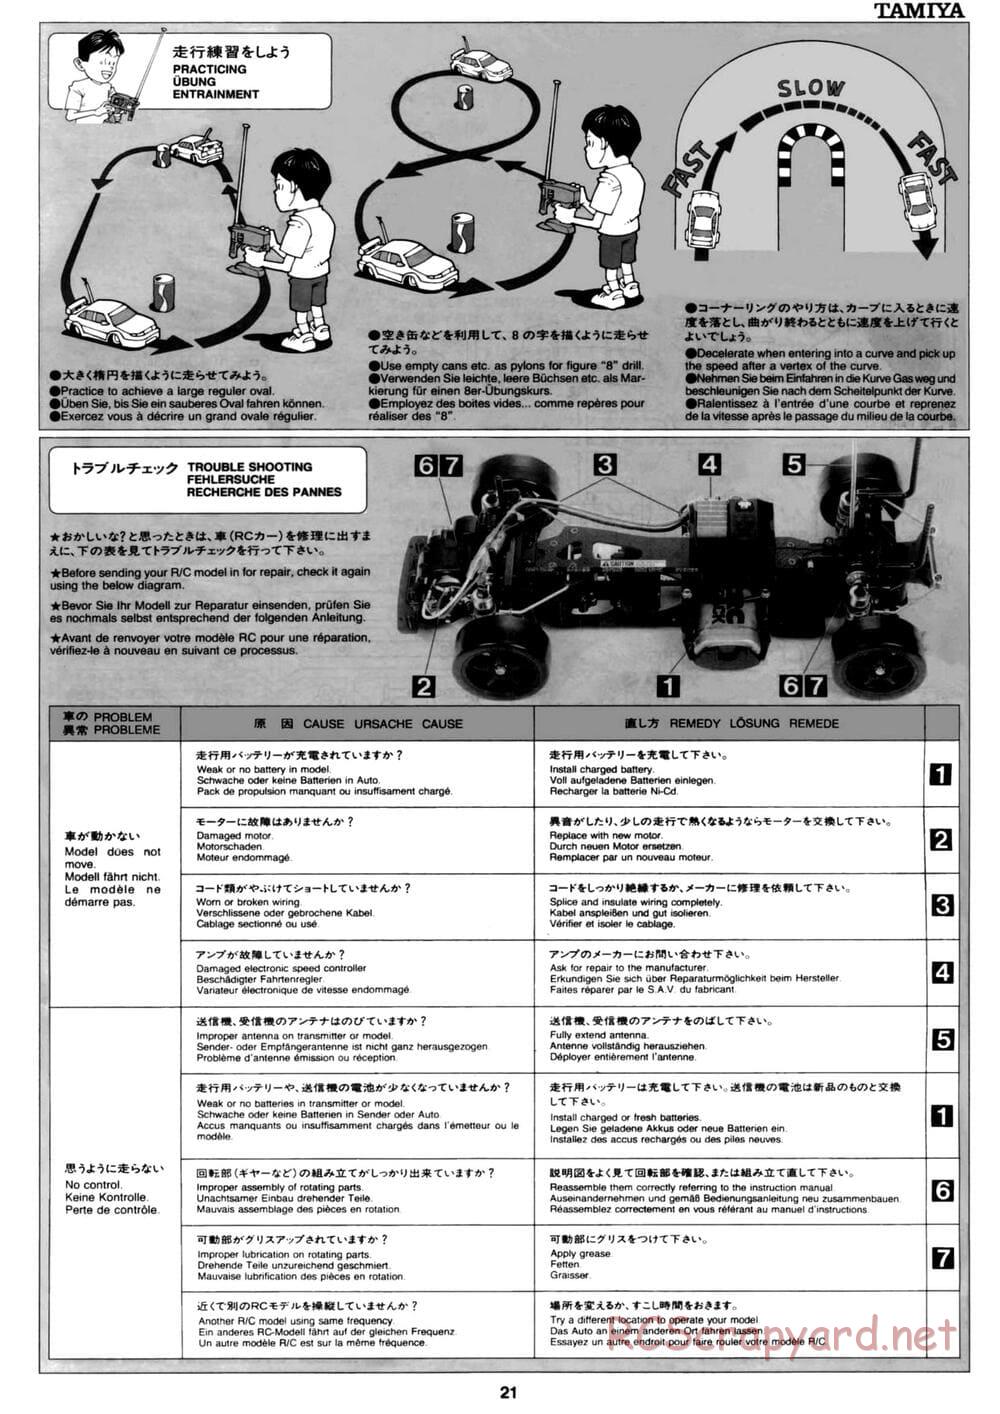 Tamiya - David Jun TA03F Pro Chassis - Manual - Page 21